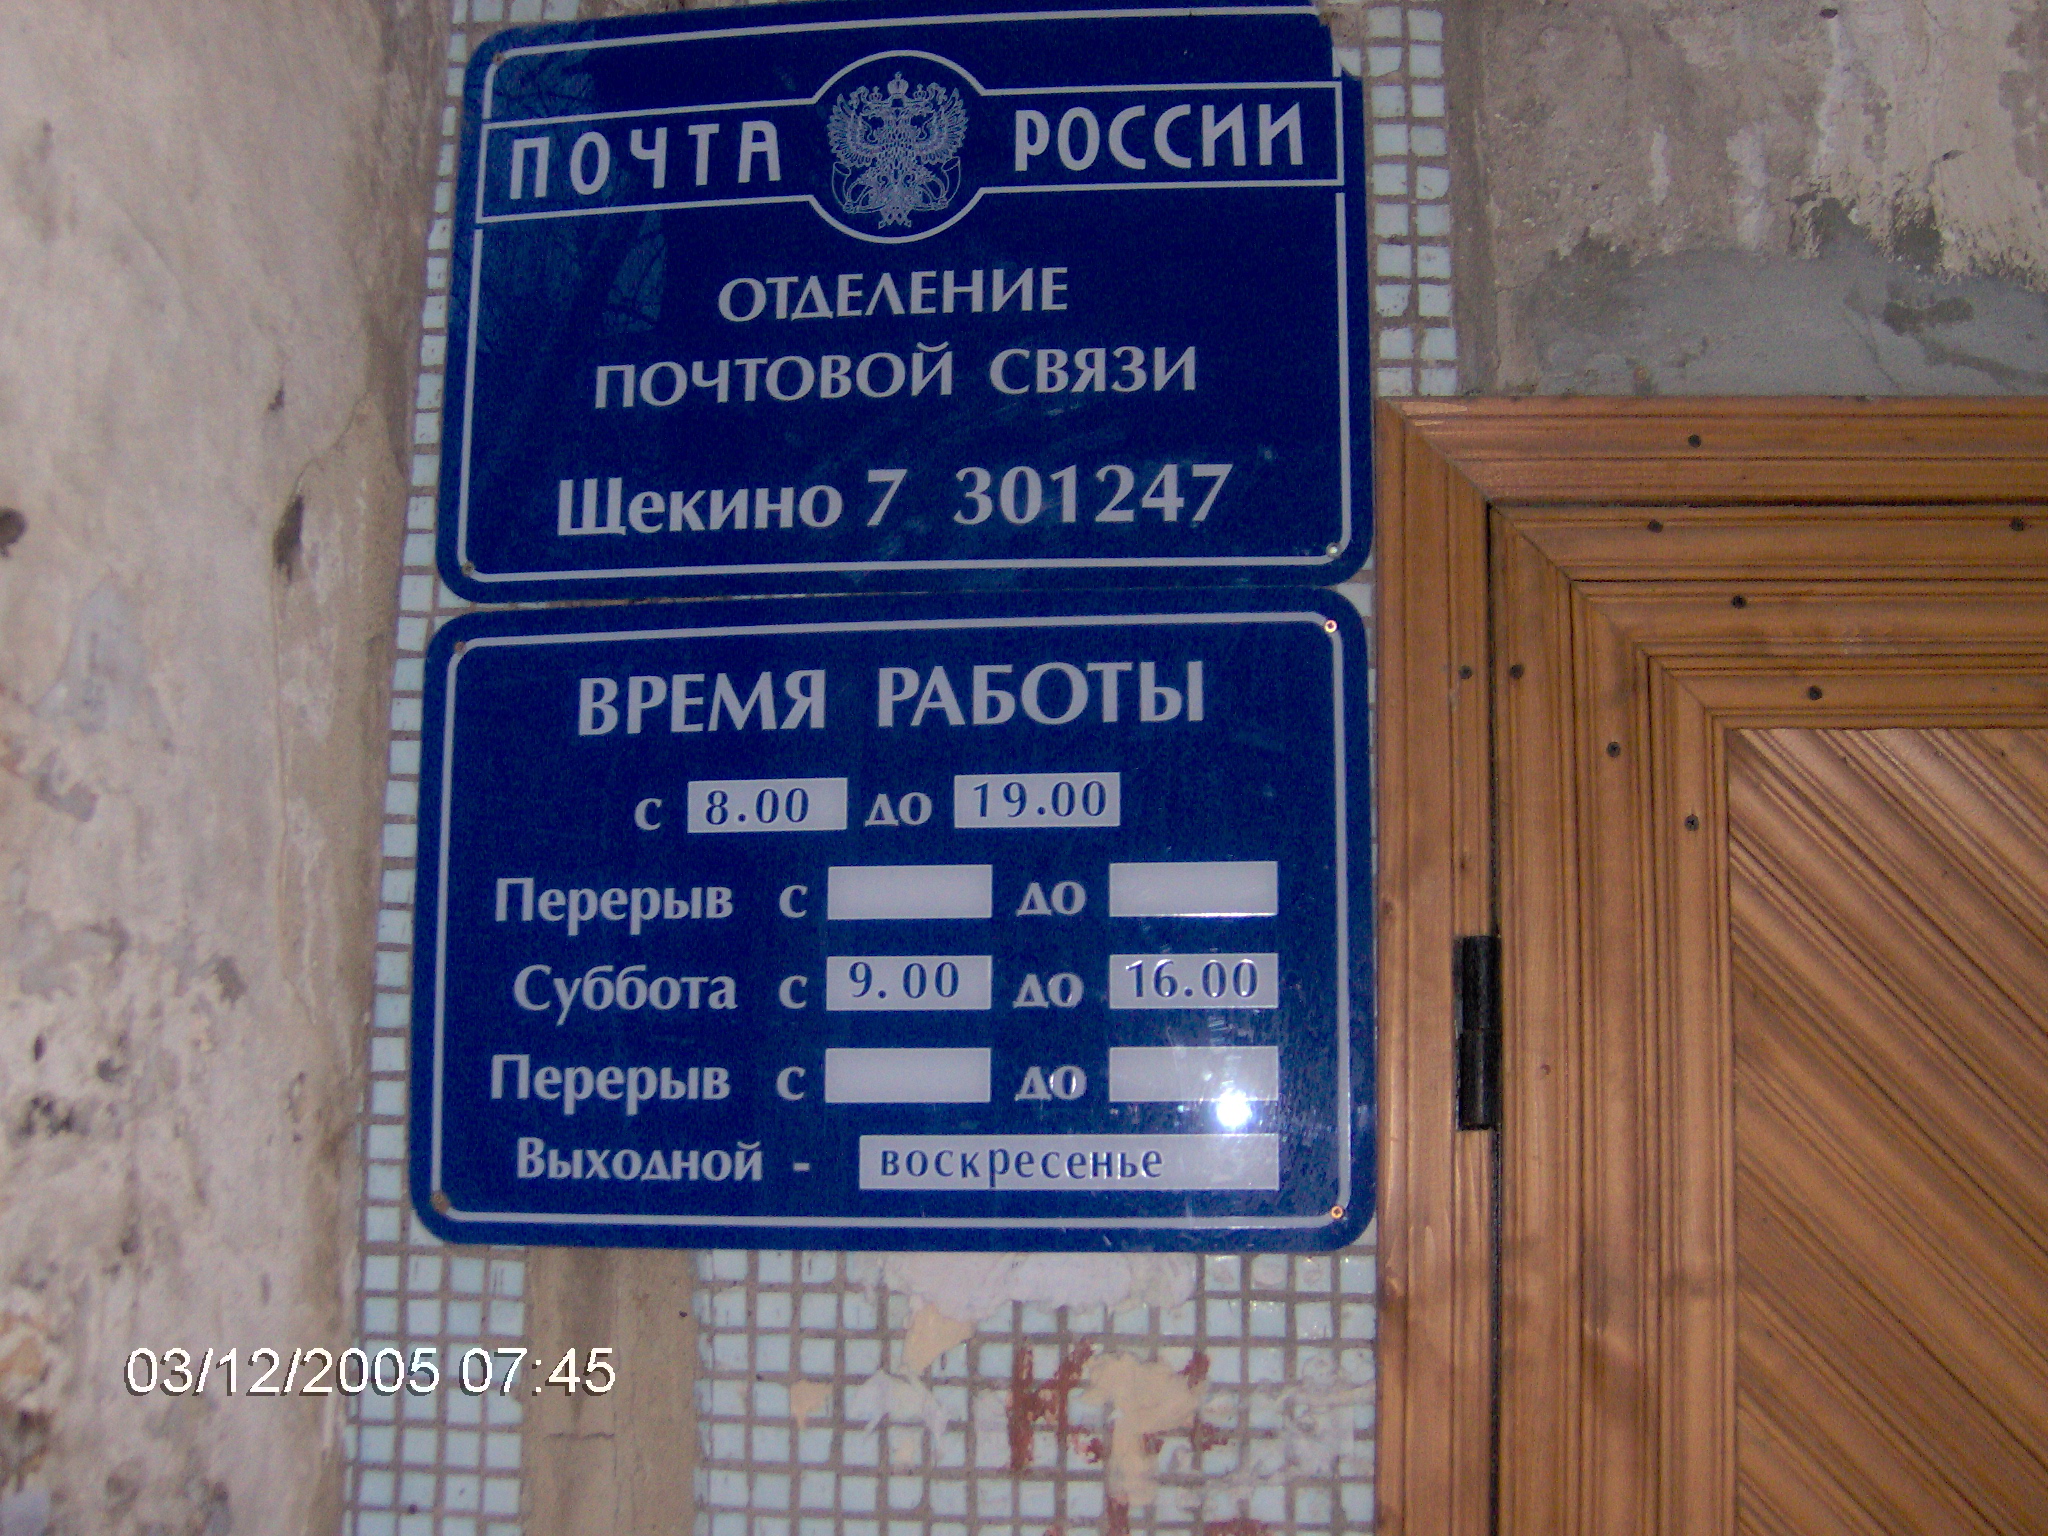 ВХОД, отделение почтовой связи 301247, Тульская обл., Щекино